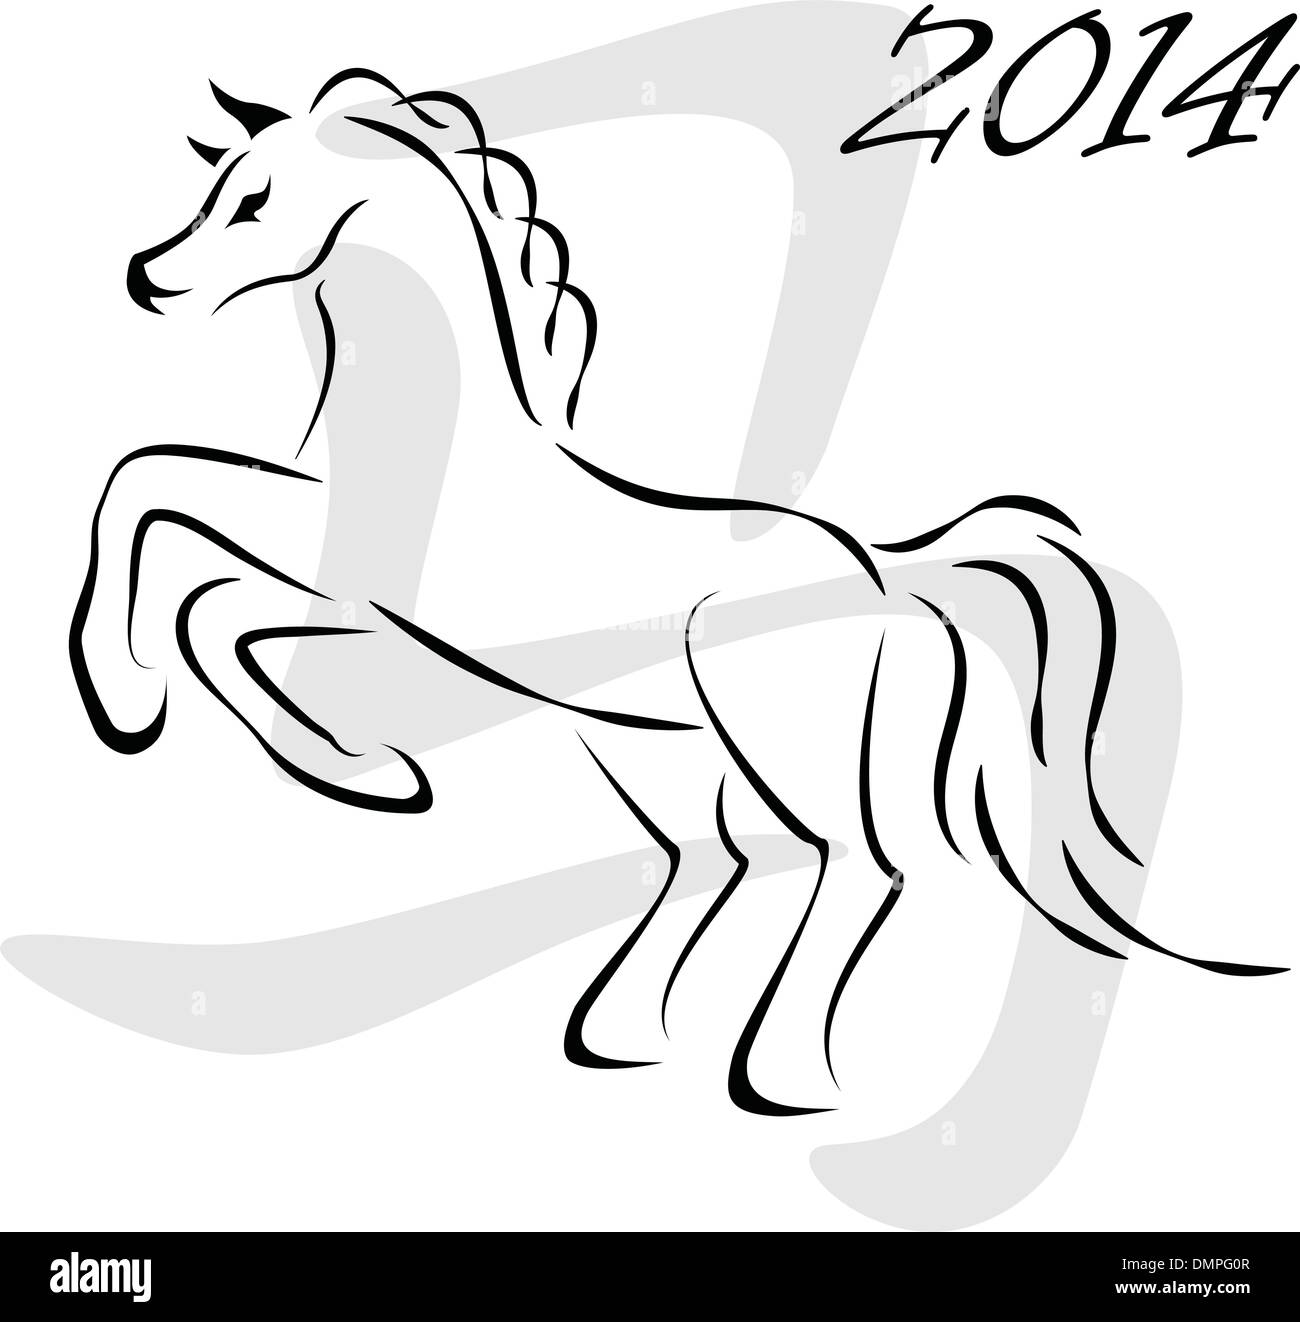 Cavallo di vettore 2014 Illustrazione Vettoriale